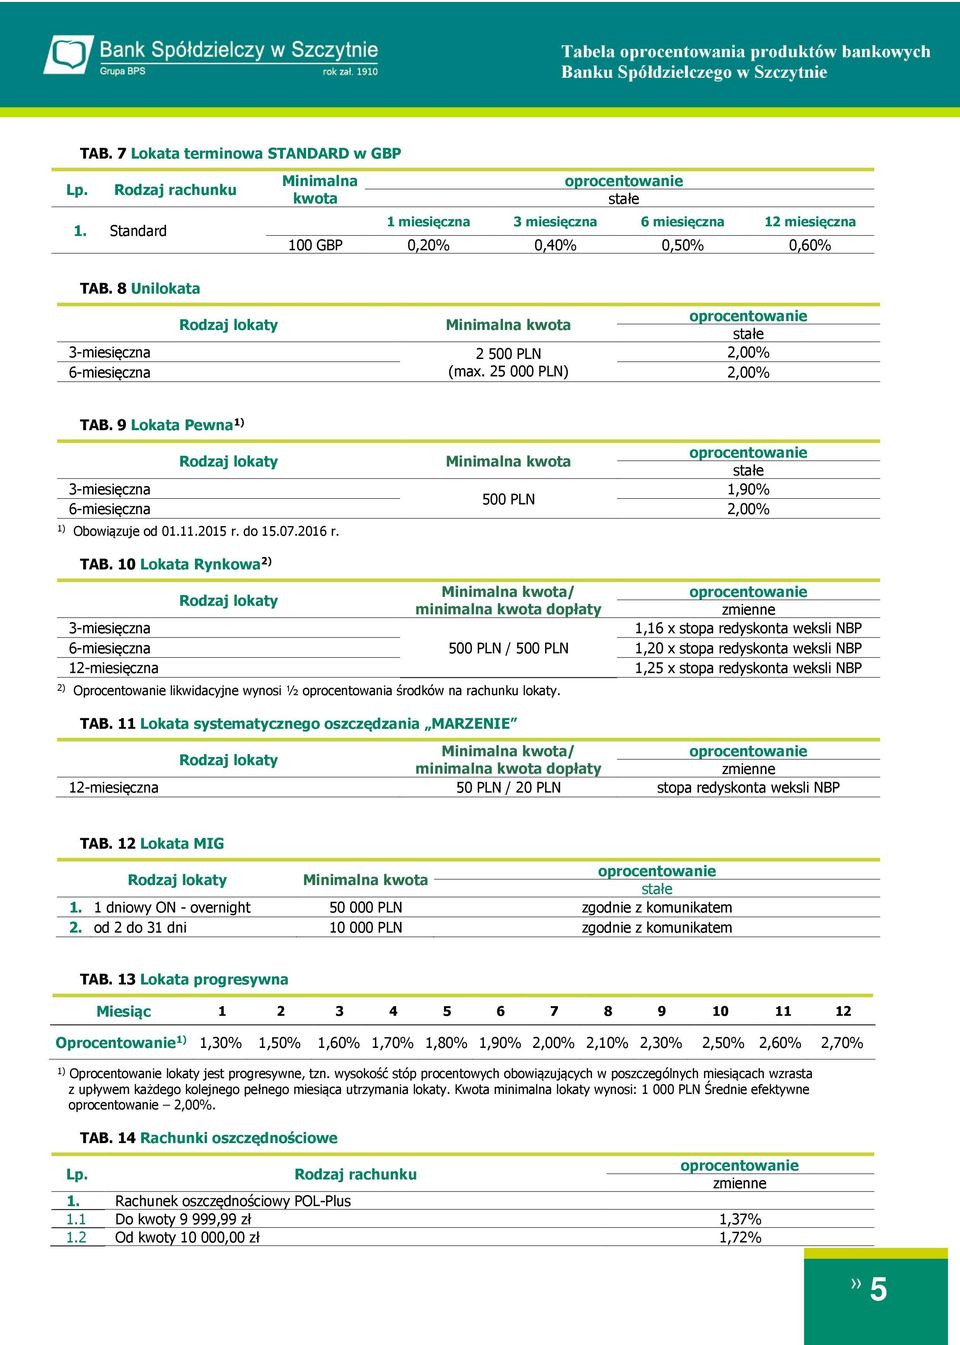 10 Lokata Rynkowa 2) 3-6- 12- / minimalna dopłaty 500 PLN / 500 PLN 2) Oprocentowanie likwidacyjne wynosi ½ oprocentowania środków na rachunku lokaty.